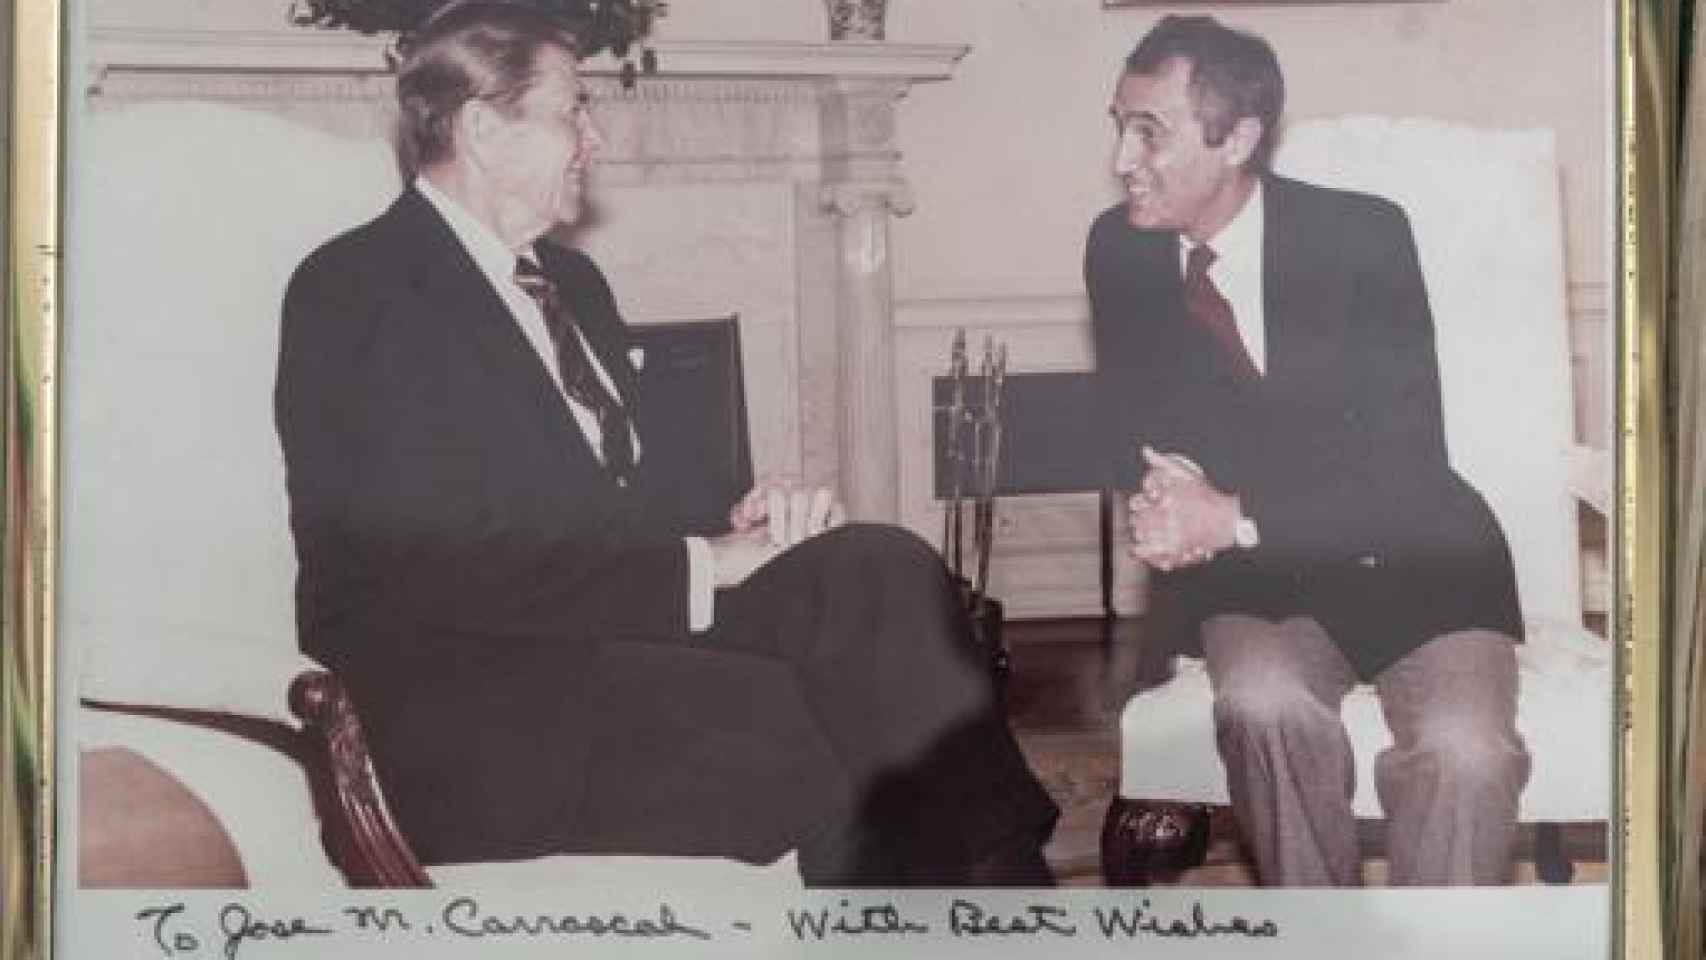 José María Carrascal en una foto junto a Ronald Reagan.